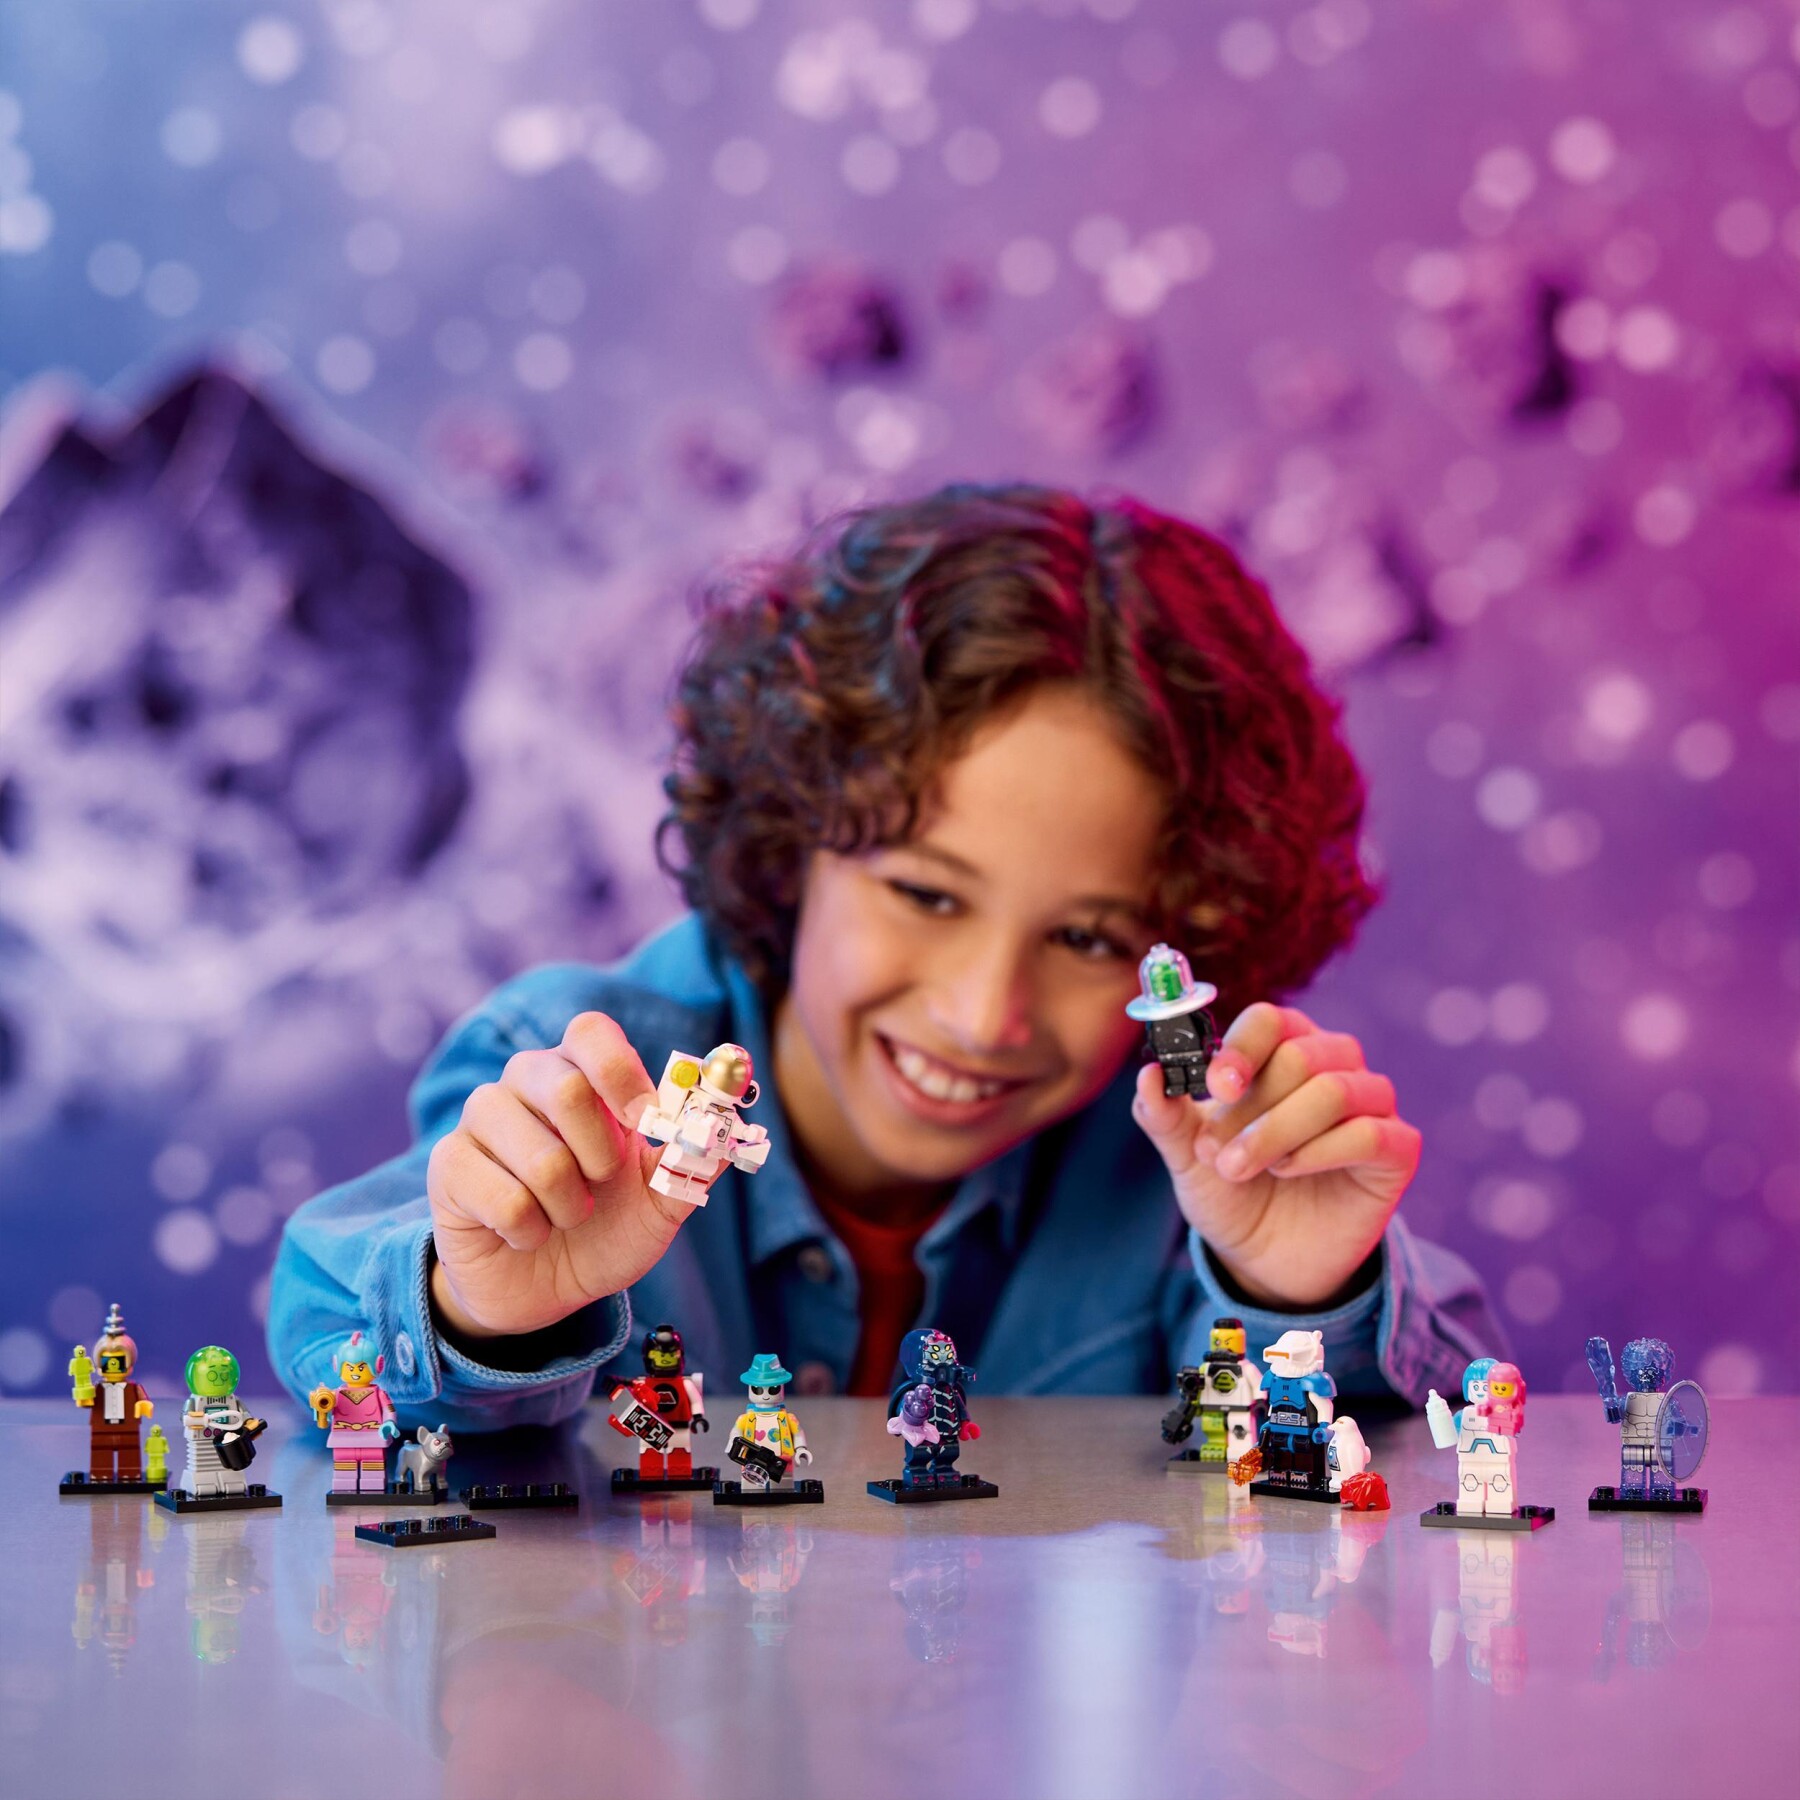 Lego minifigures 71046 serie 26 spazio, scatola con 1 di 12 personaggi giocattolo a caso da collezione, giochi per bambini 5+ - Lego